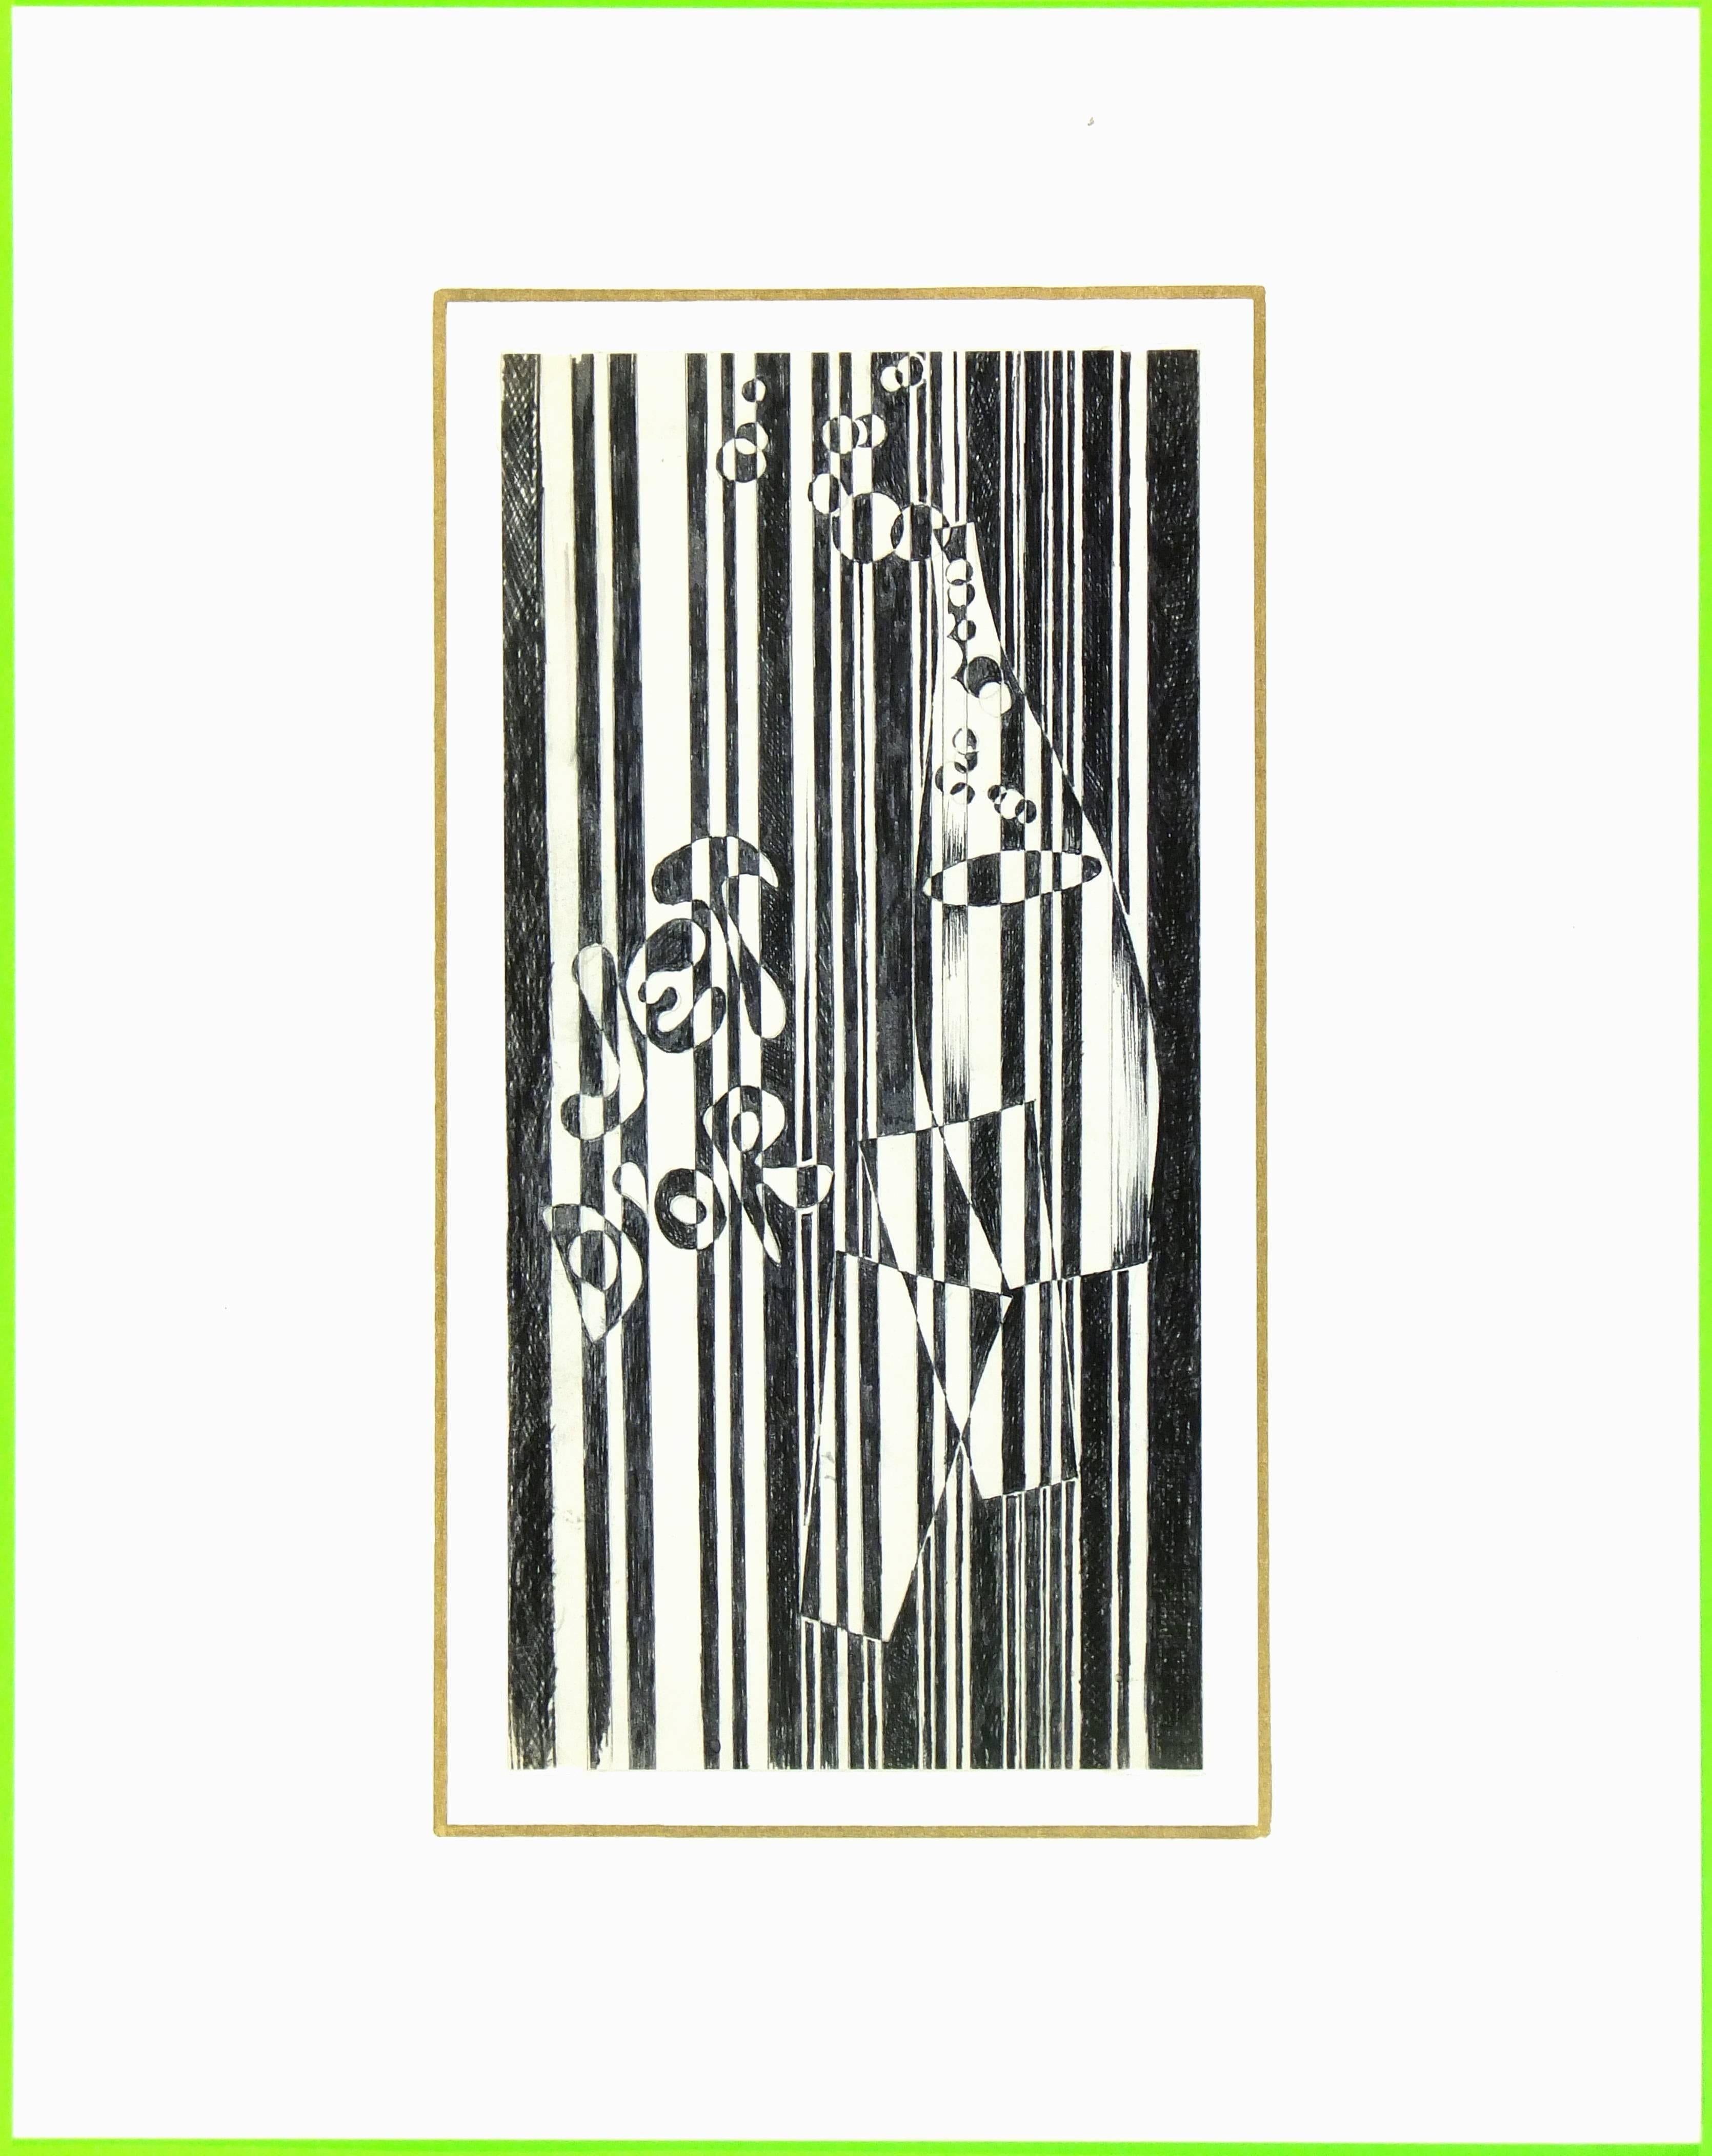 Kontrastreiche schwarz-weiße Feder und Tinte Französisch abstrakt, 1980er Jahre.  

Originalkunstwerk auf Papier auf einem weißen Passepartout mit Goldrand. Die Matte passt in einen Rahmen in Standardgröße.  Inklusive Plastikhülle und